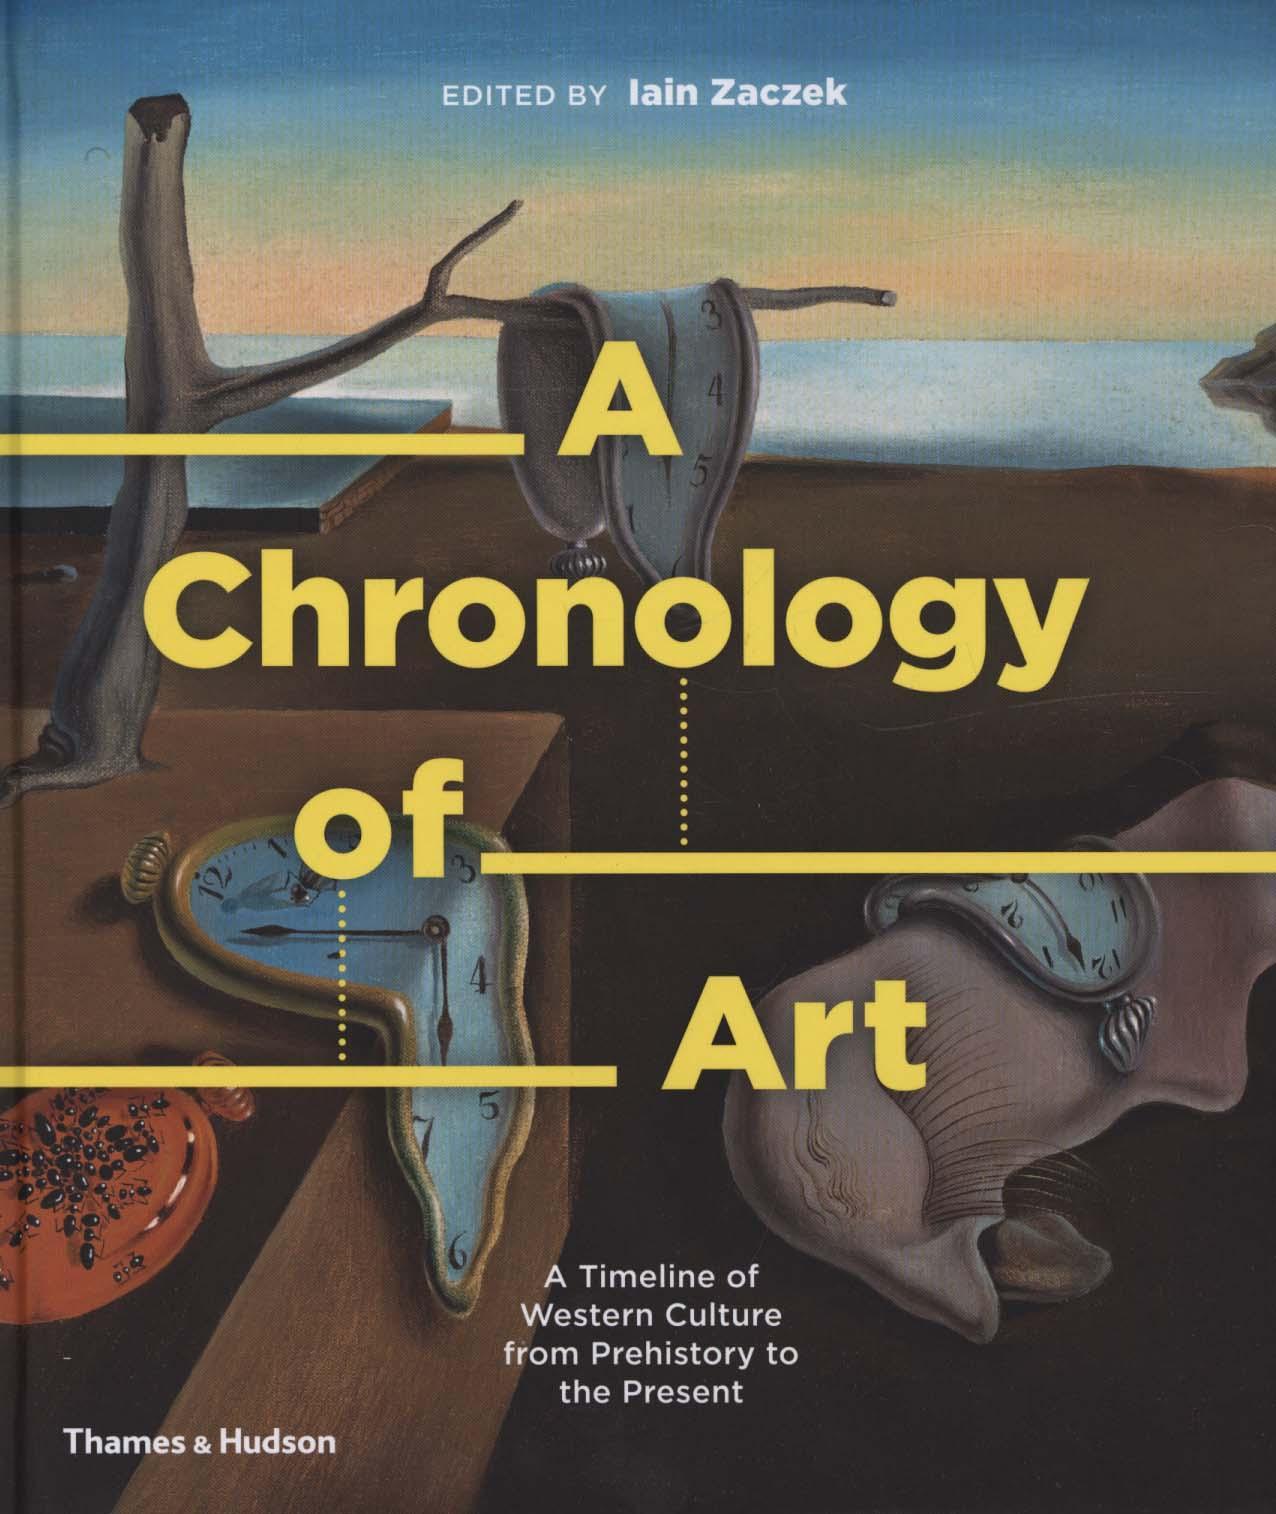 Chronology of Art